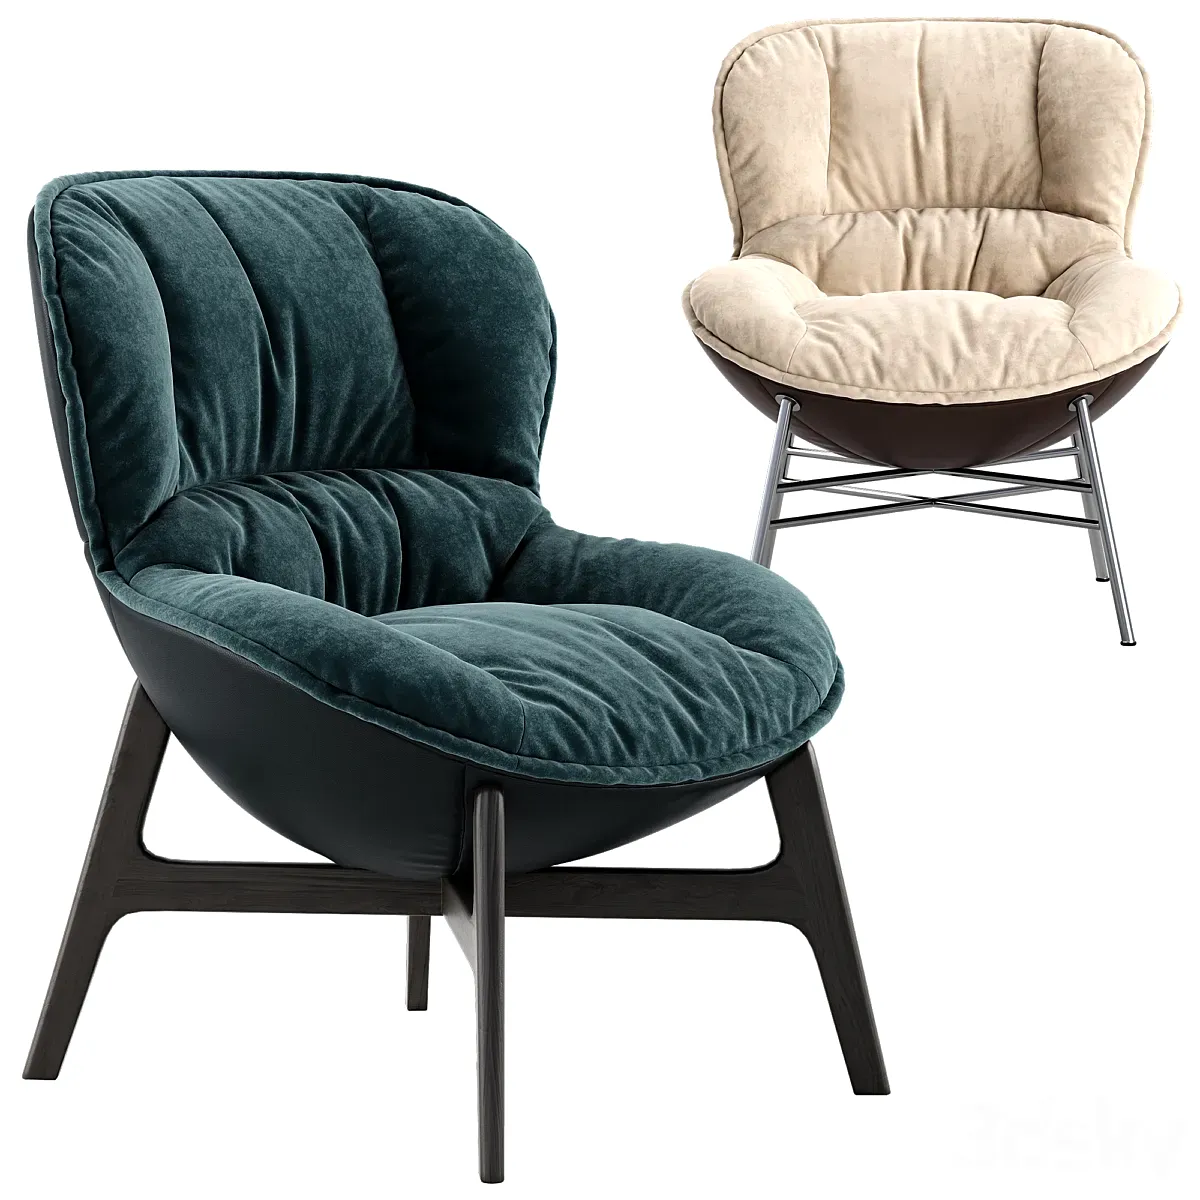 3dsky - Ditre italia Softy armchair